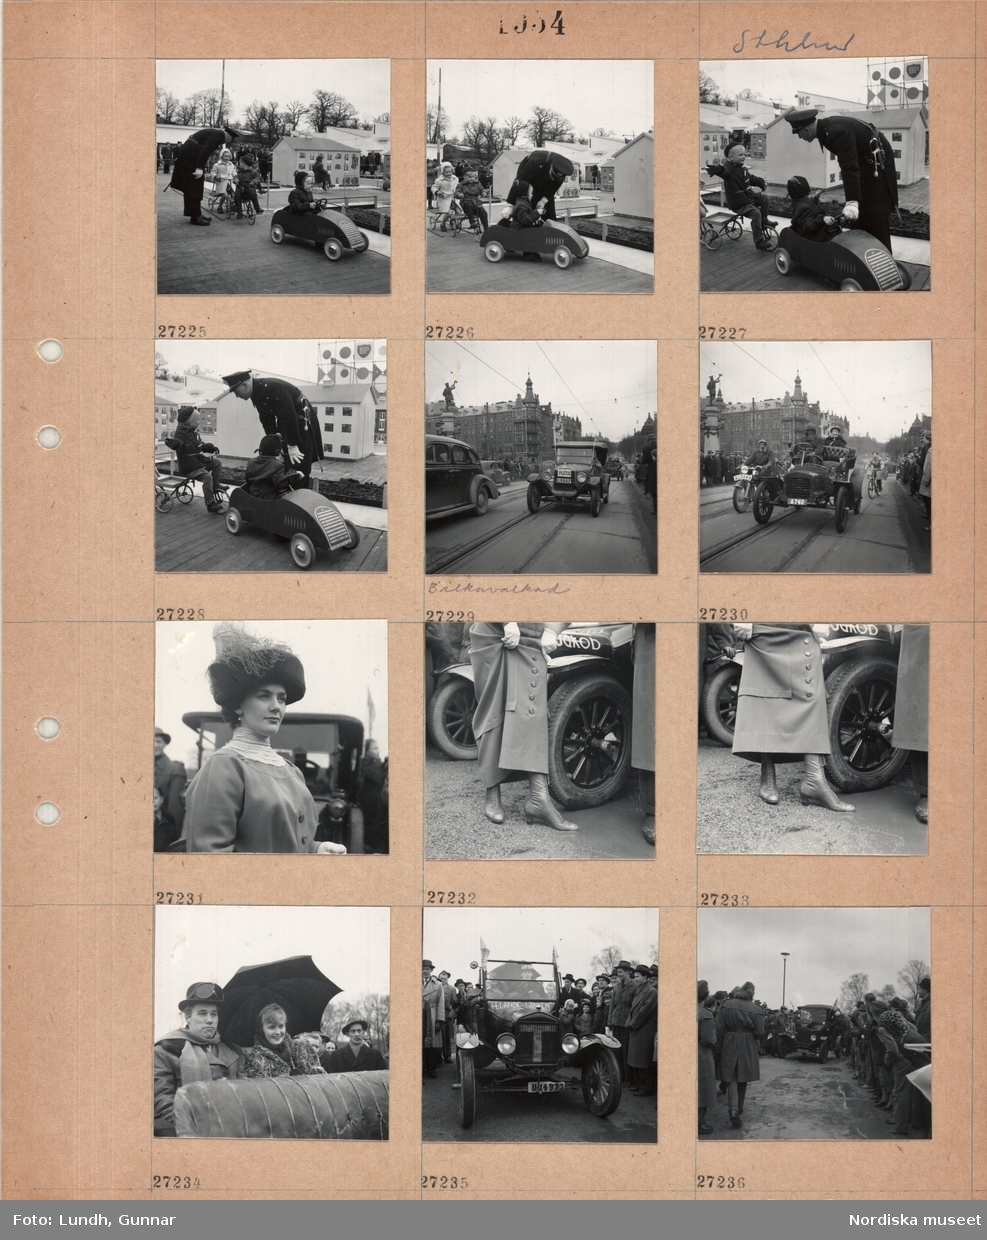 Motiv: Sthlm (Stockholm) ;
En man i uniform dirigerar barn i trampbilar och på trehjulingar som åker i en ministad med trafikmärken för att lära sig trafikregler, historiska bilar och kvinnor och män i historiska kläder åker förbi människor som står på trottoaren "Bilkavalkad", en kvinna i historiska kläder.